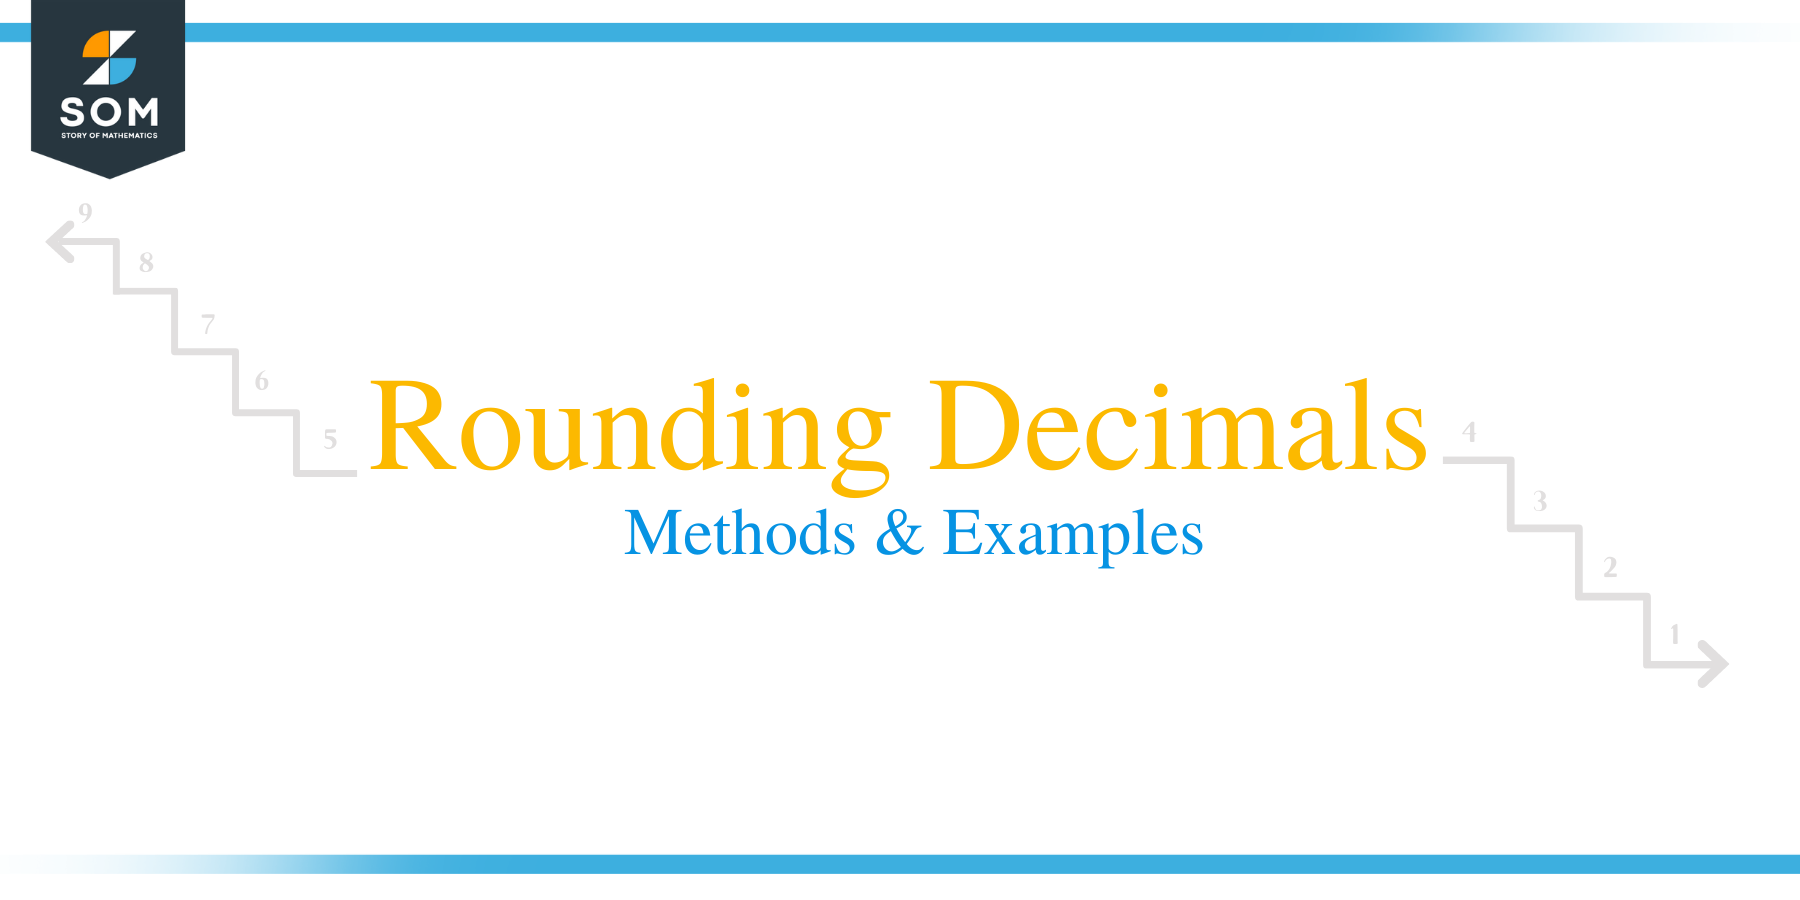 Rounding Decimals